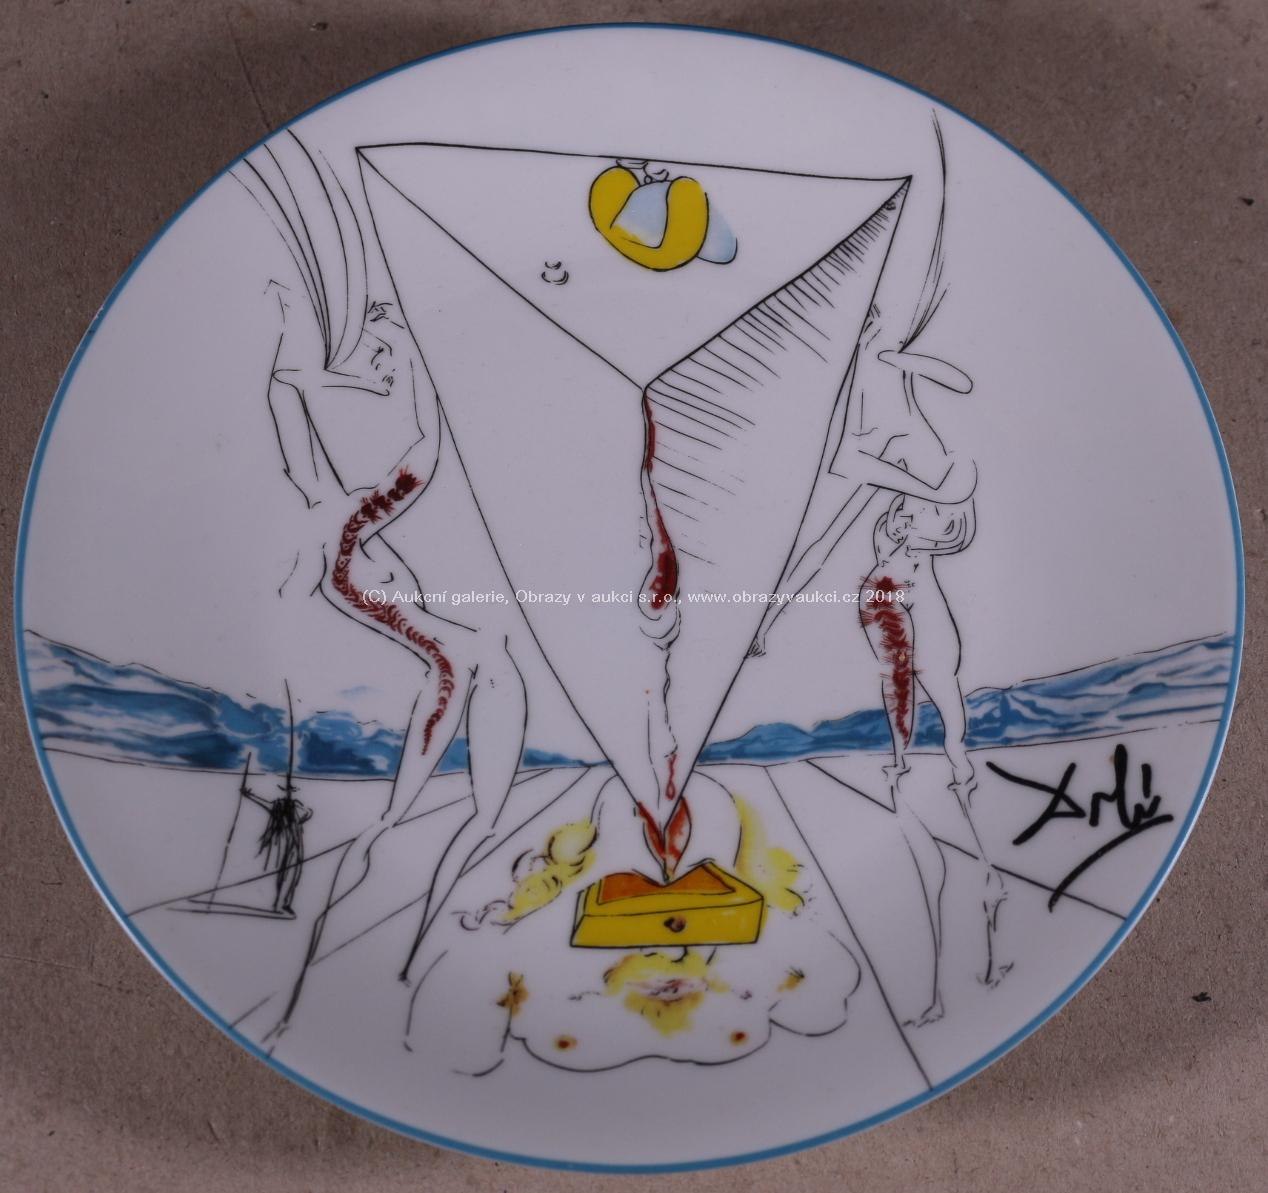 Salvador Dalí - Philosophe écrassé par le Cosmos